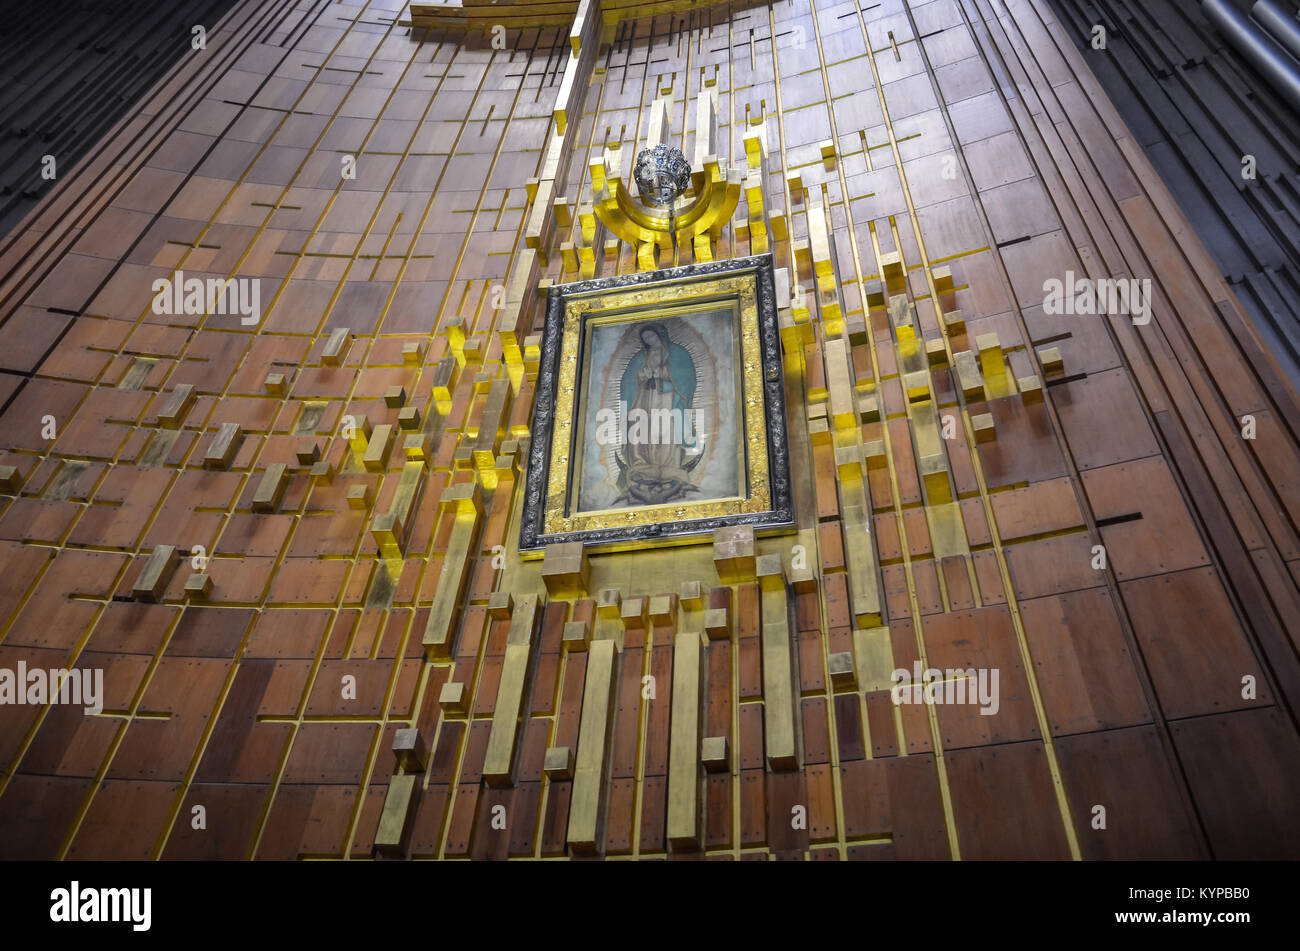 Città del Messico - Giugno 19, 2013: misteriosa e miracolosa immagine di Nostra Signora di Guadalupe, stampato in Tilma, nel mantello di Juan Diego. Immagine ex Foto Stock